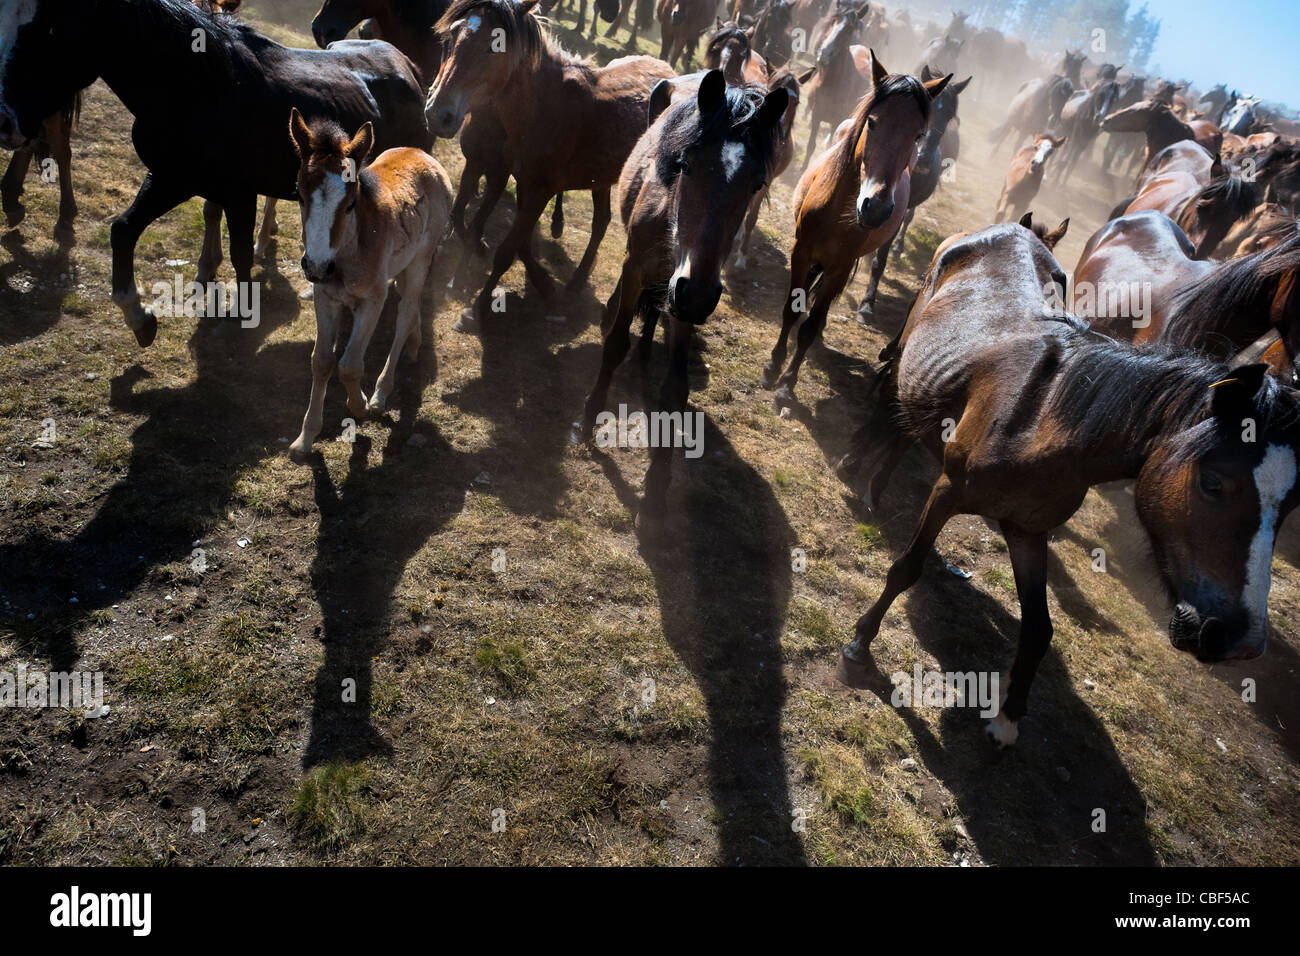 Wilde Pferde sind aus den Bergen für den jährlichen Rapa Das Bestas (Shearing der Tiere) Festival in Spanien nach unten getrieben. Stockfoto